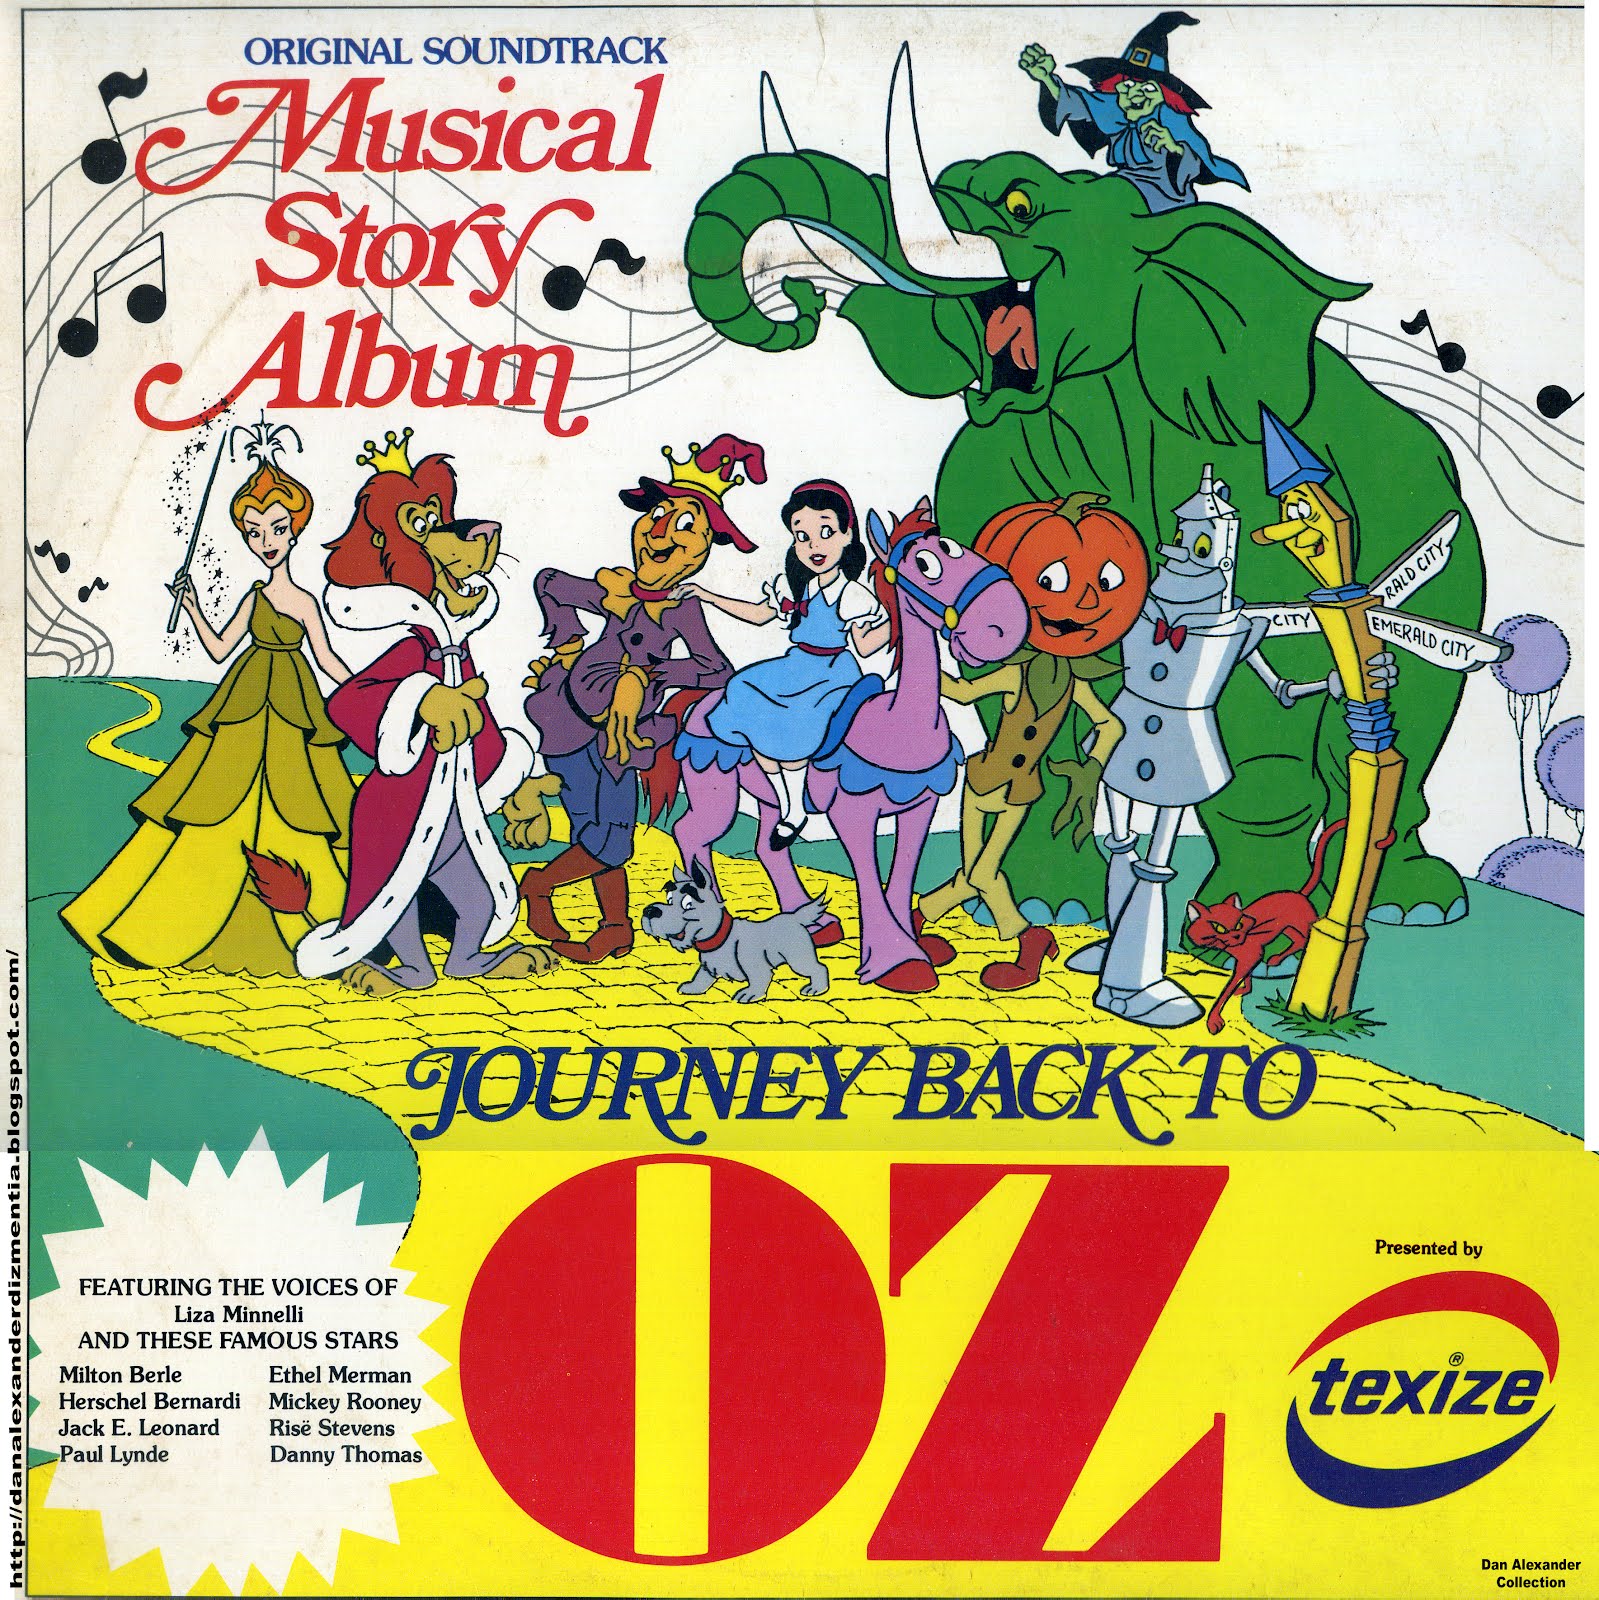 Back journey. Journey back to oz. Journey back to oz 1972. Return to oz. A Musical story.